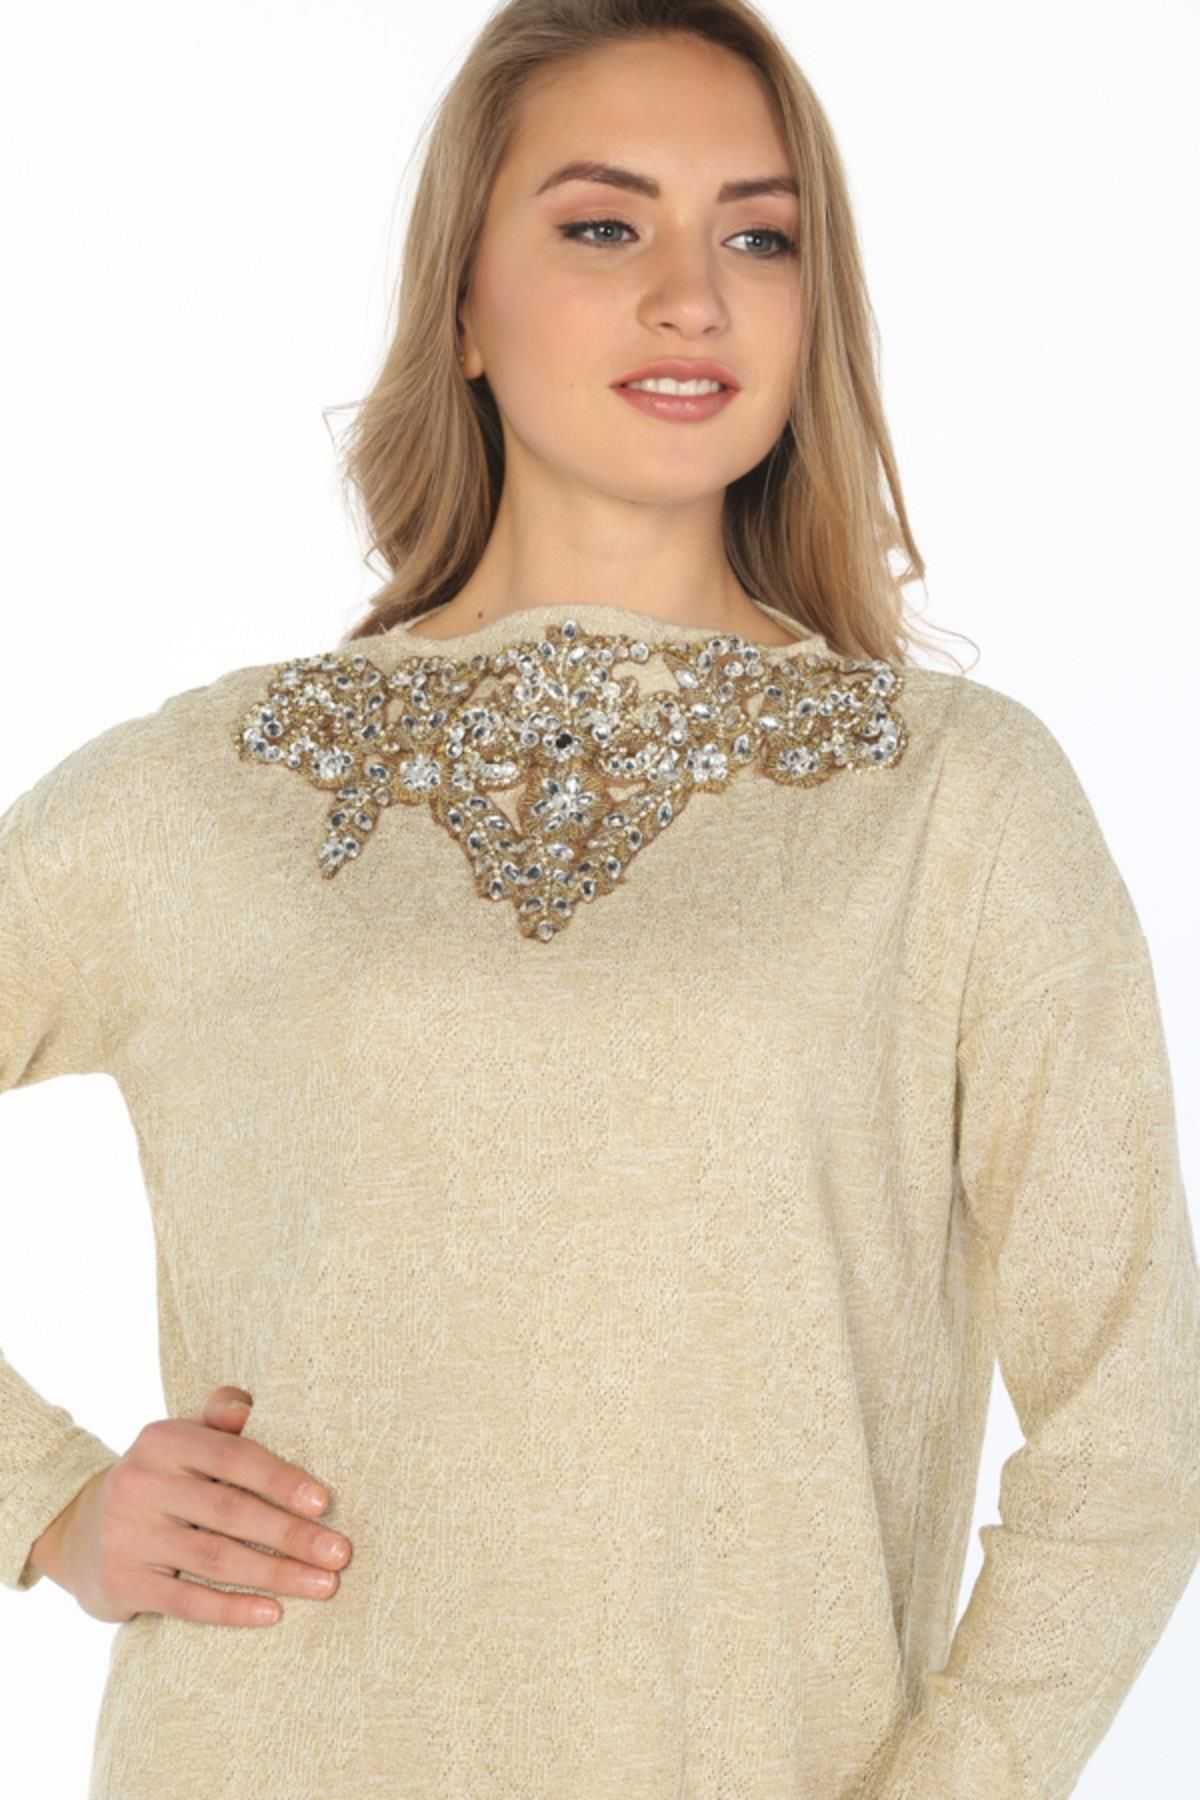 Hanna's Kadın Altın Rengi Yakası Nakışlı Simli Örme Astarlı Elbise